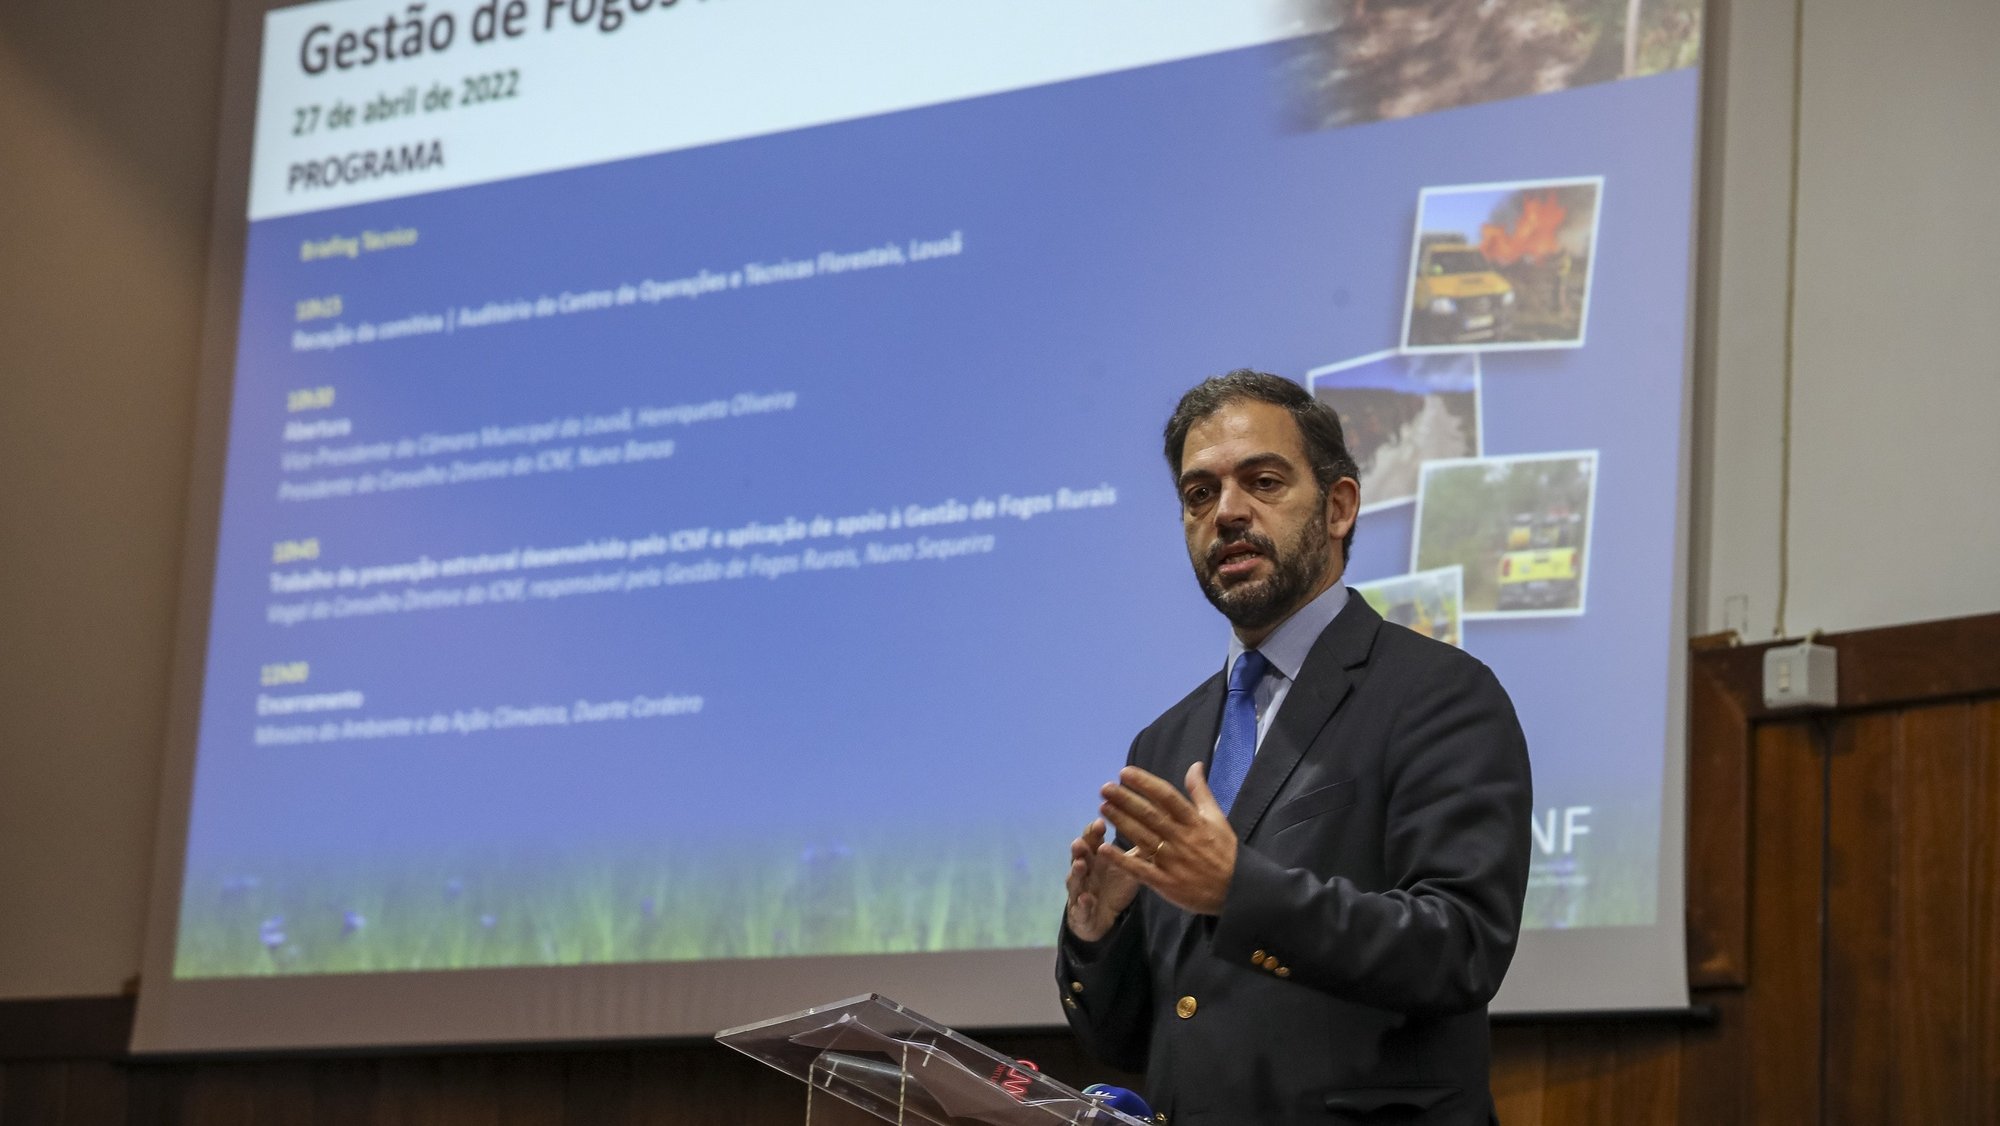 O ministro do Ambiente e da Ação Climática, Duarte Cordeiro, durante a sessão de apresentação do trabalho de prevenção estrutural desenvolvido pelo ICFN e aplicação de apoio à Gestão de Fogos Rurais, no Centro de Operações e Técnicas Florestais, Lousã, 27 de abril de 2022. PAULO NOVAIS/LUSA